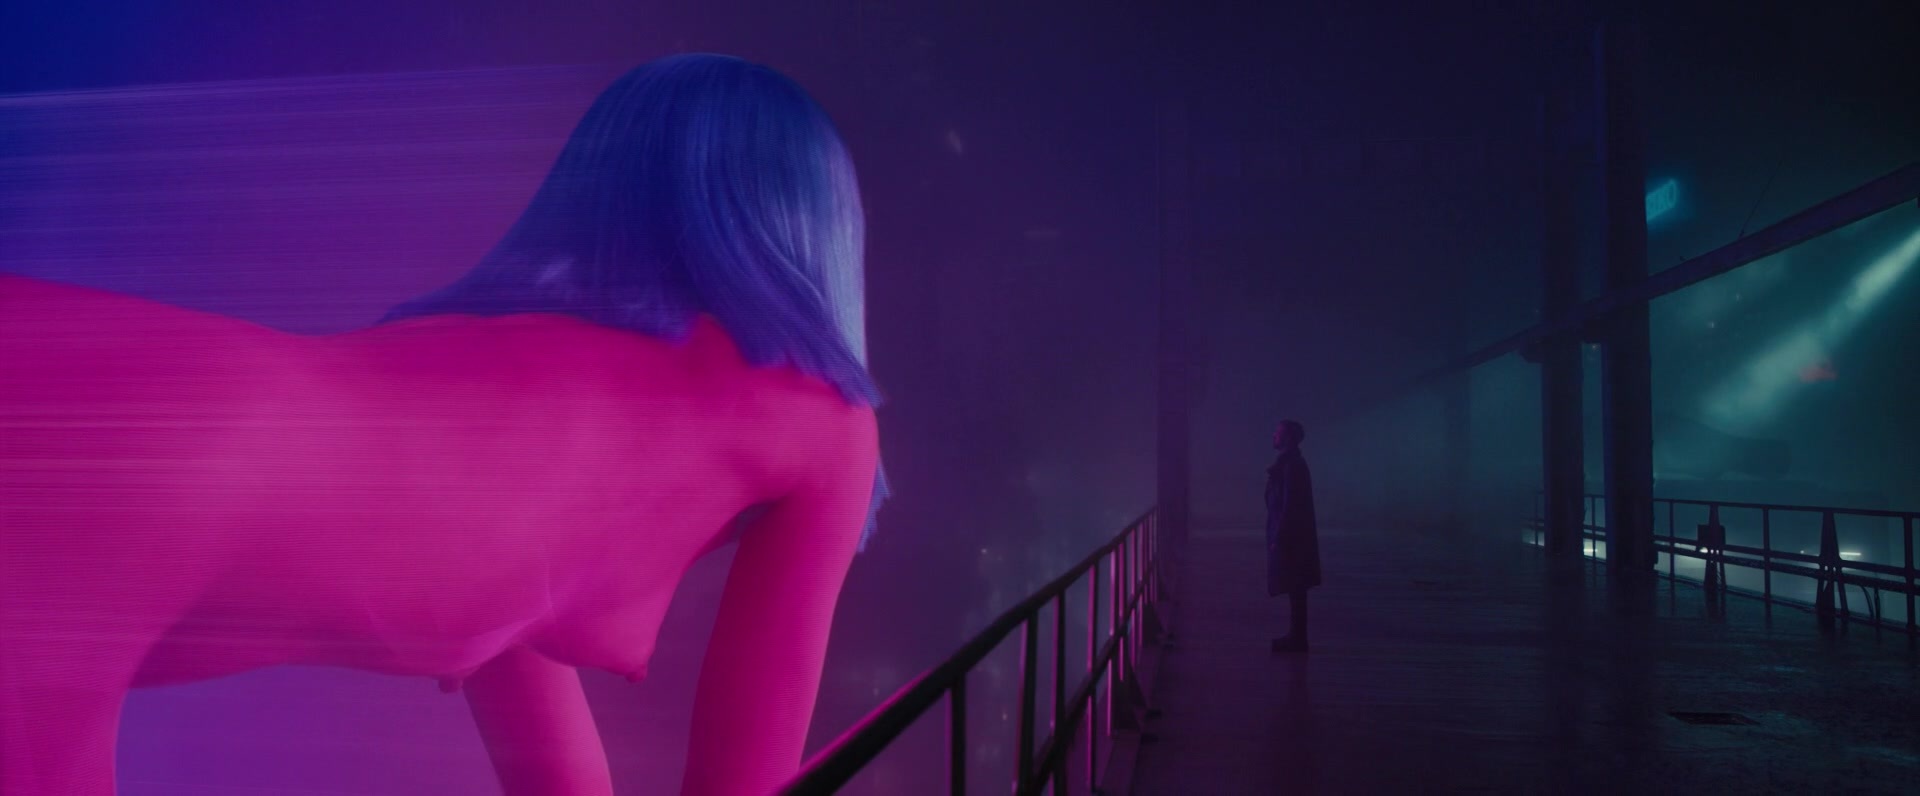 Ana De Armas Desnuda En Blade Runner 2049 